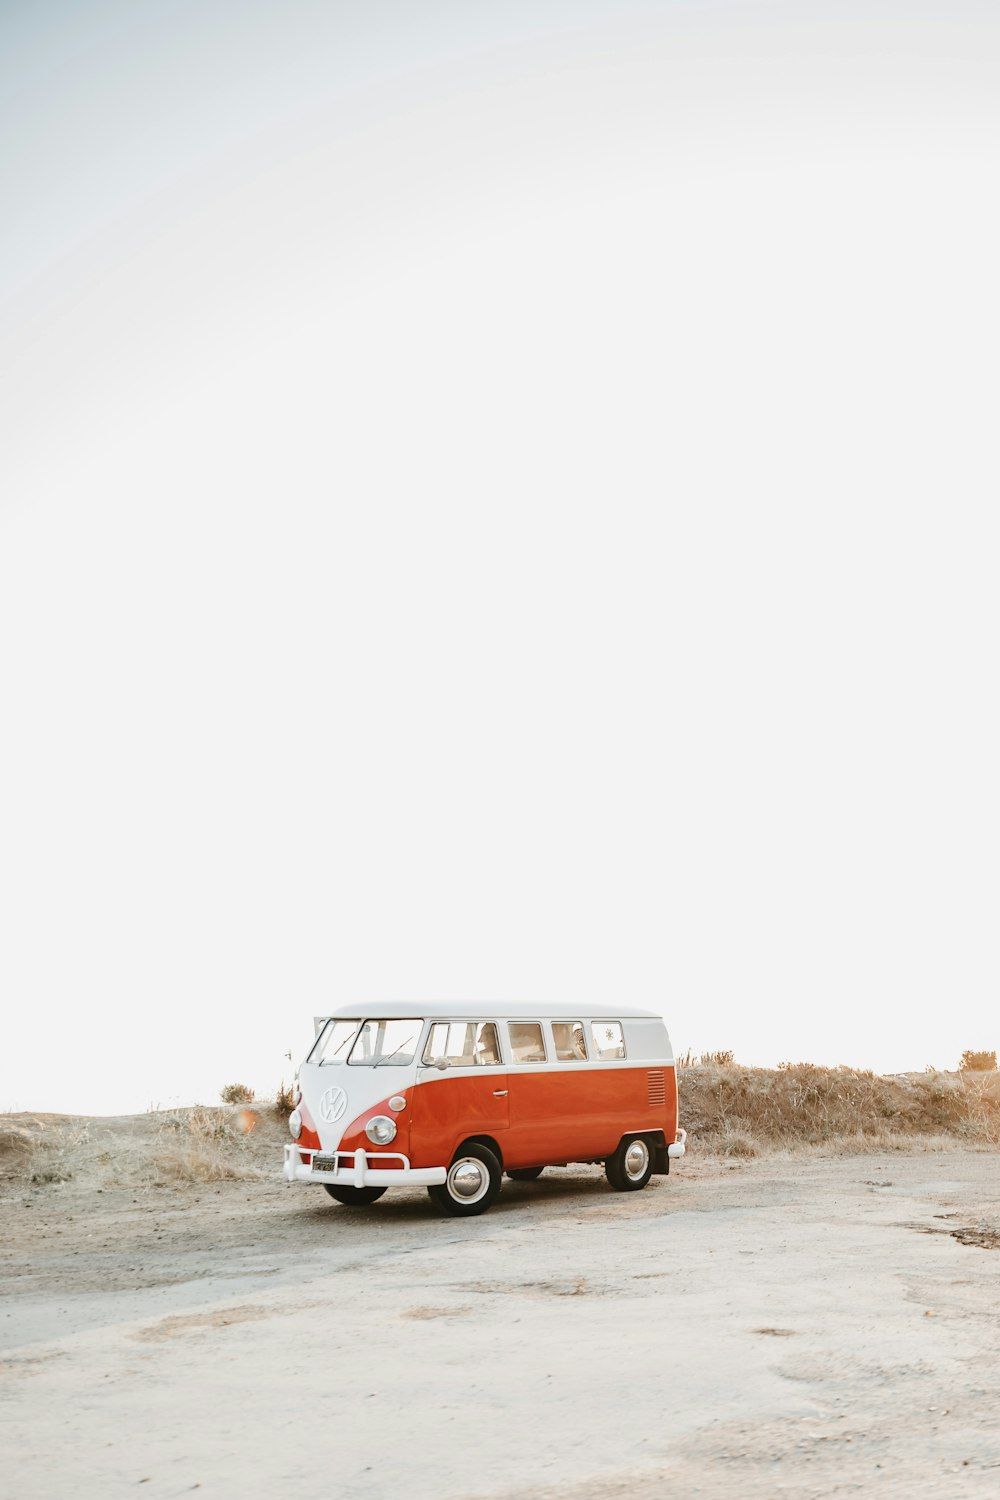  Volkswagen Hintergrundbild 1000x1500. Vw Van Picture. Download Free Image